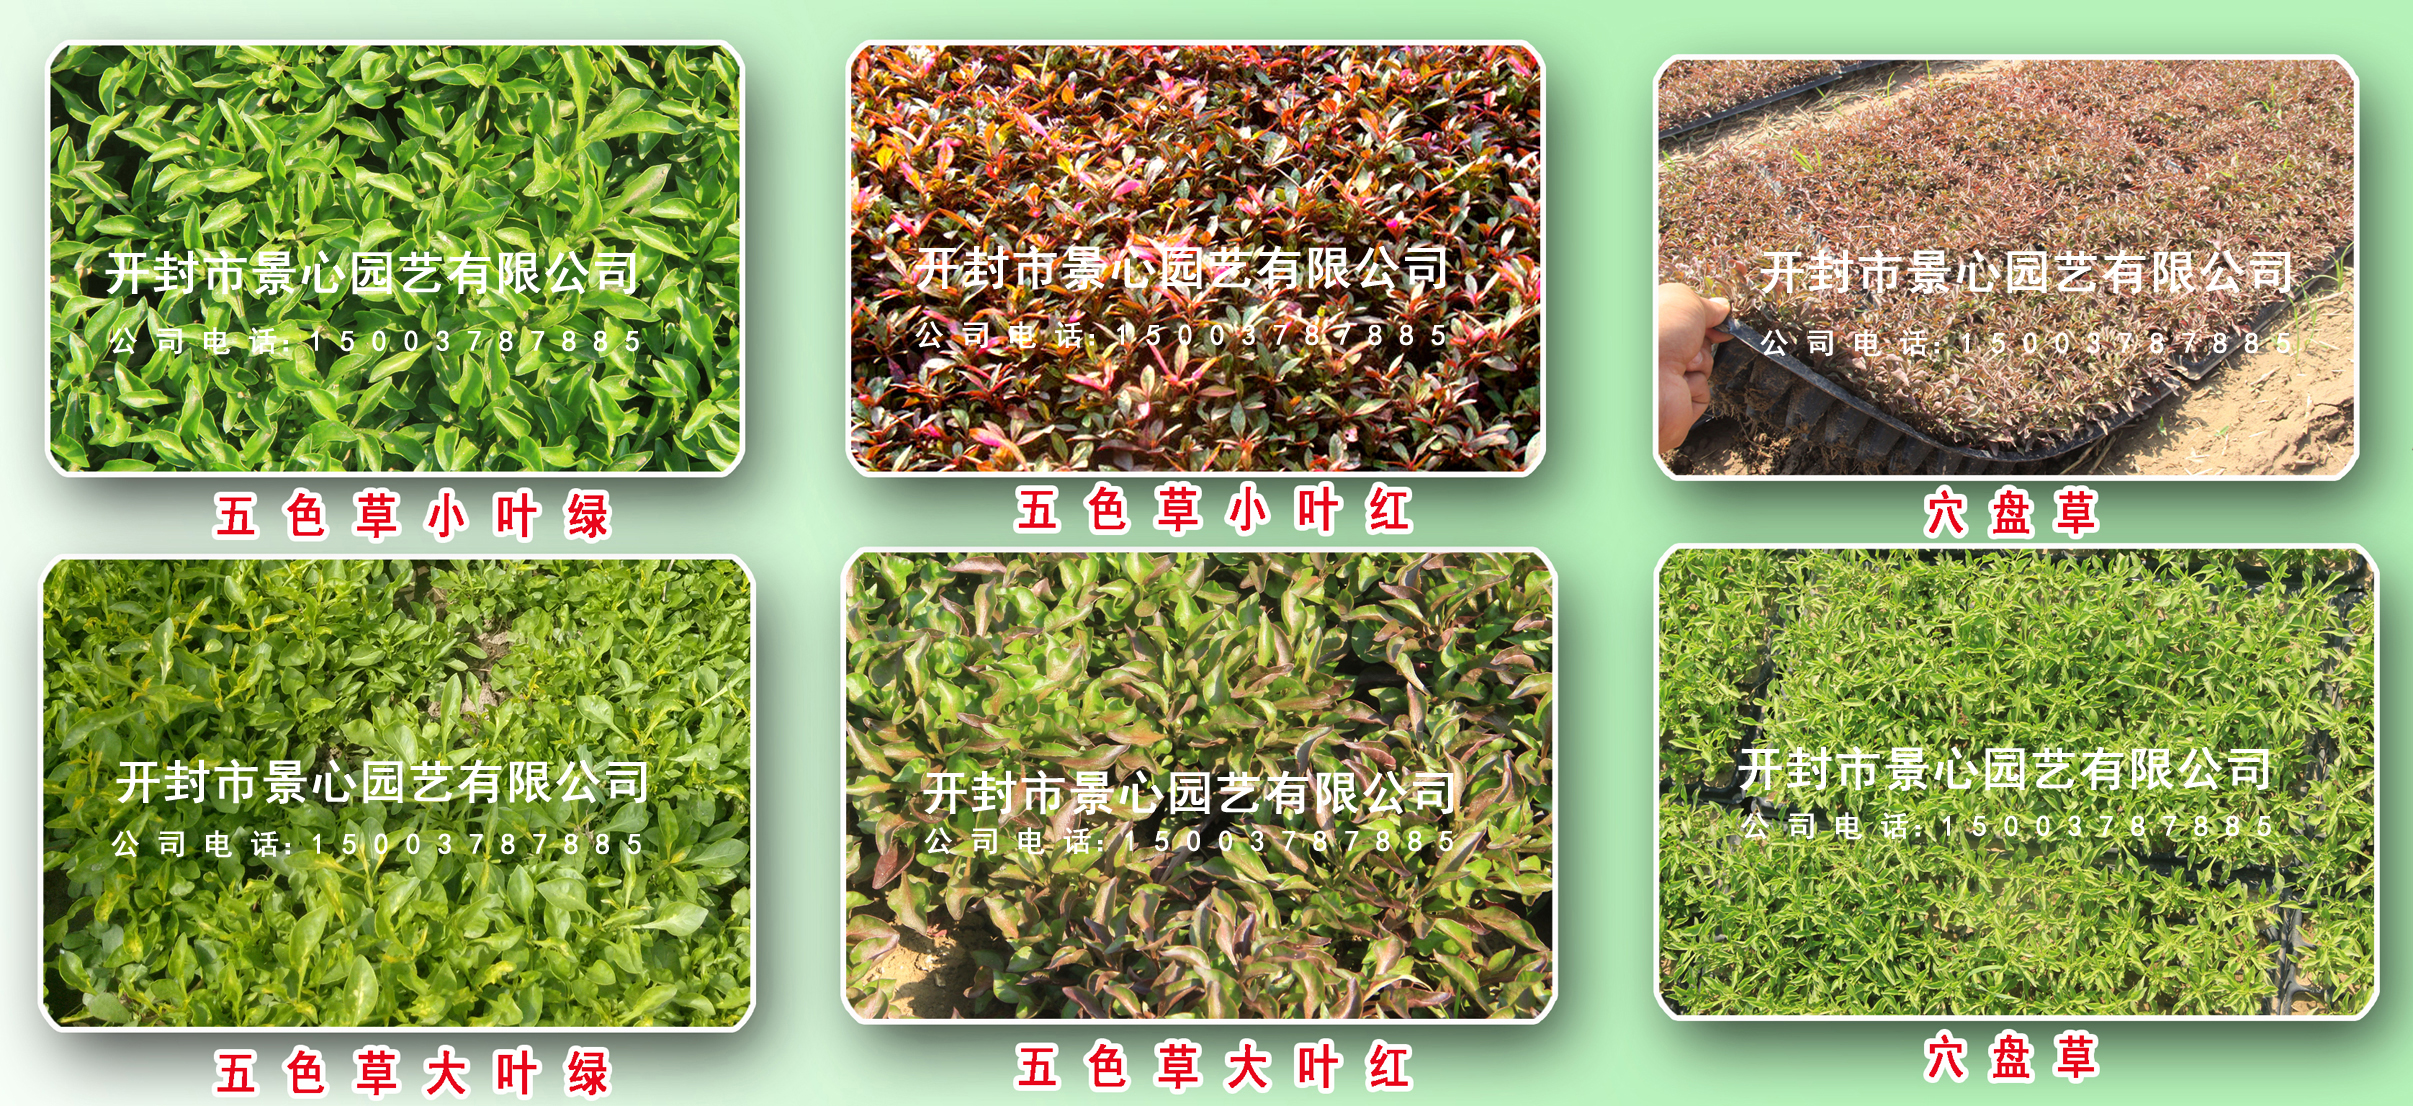 立体花坛设计制作 五色草造型 植物绿雕 五色草种植基地 批发优惠